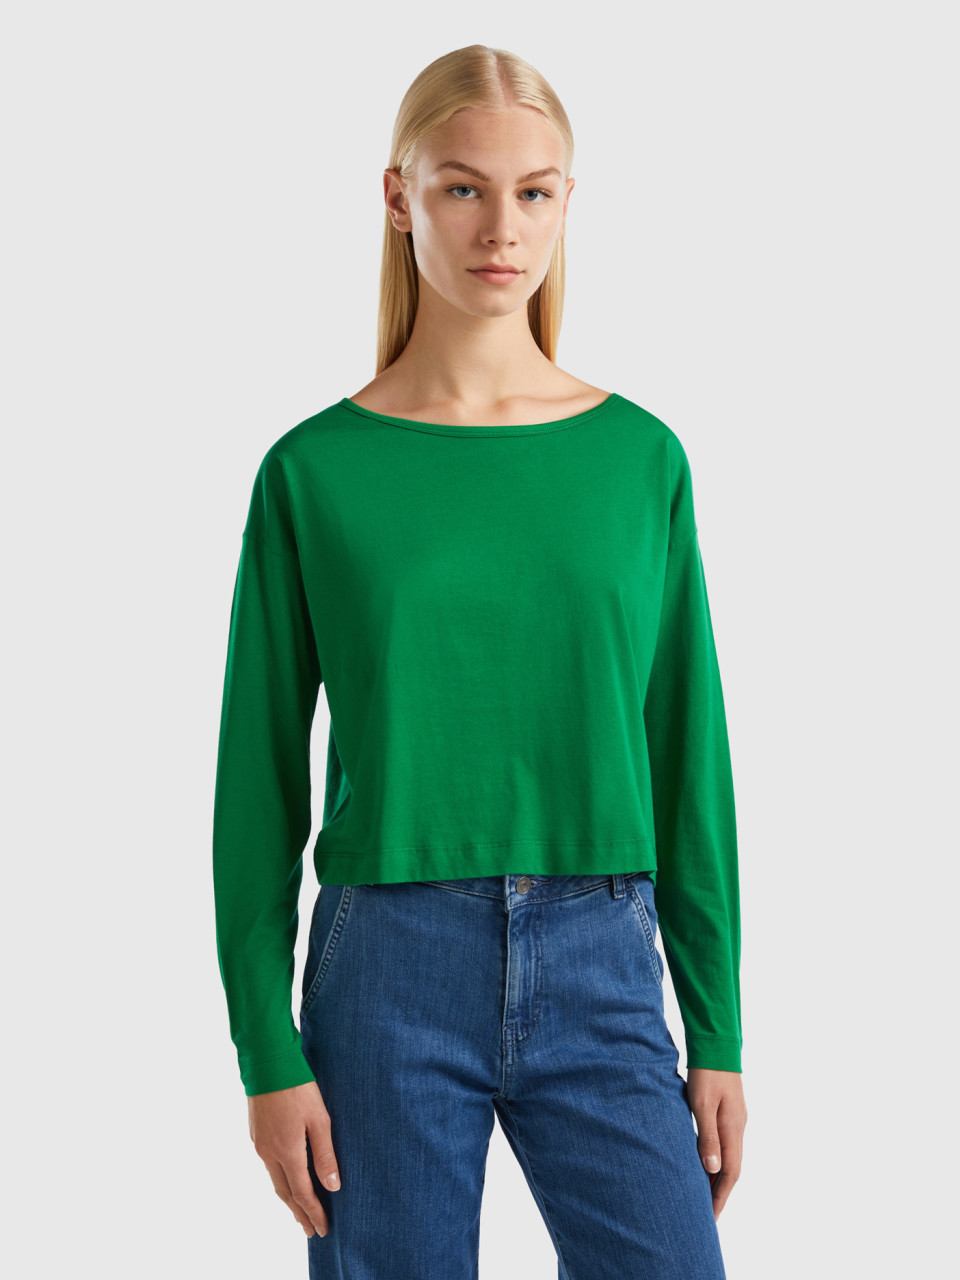 Benetton, Forest Green Long Fiber Cotton T-shirt, Green, Women